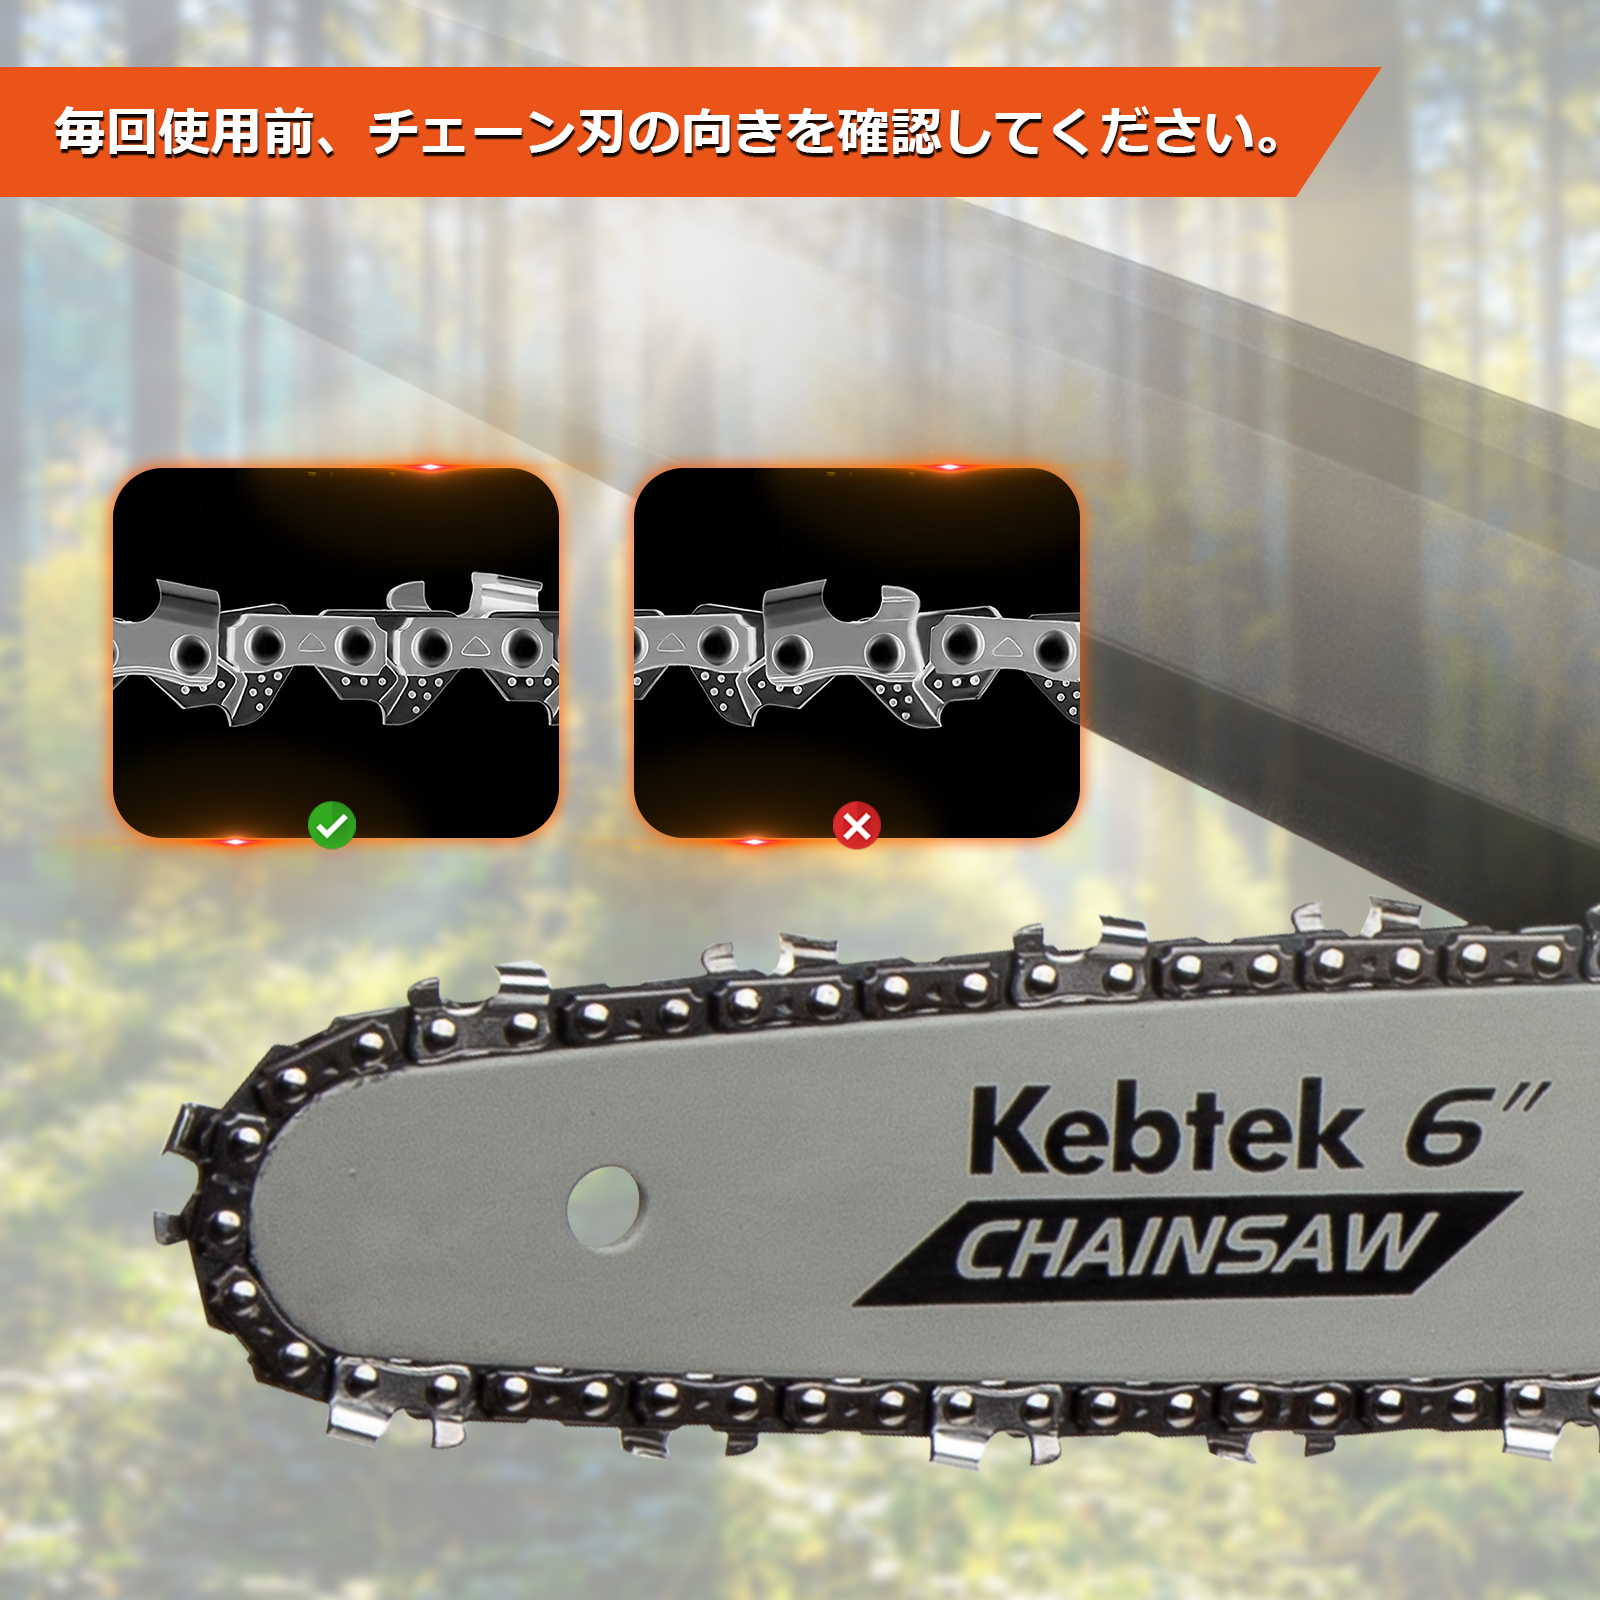 Kebtek 6インチ電動チェーンソー品番DLA-0017互換のチェーン